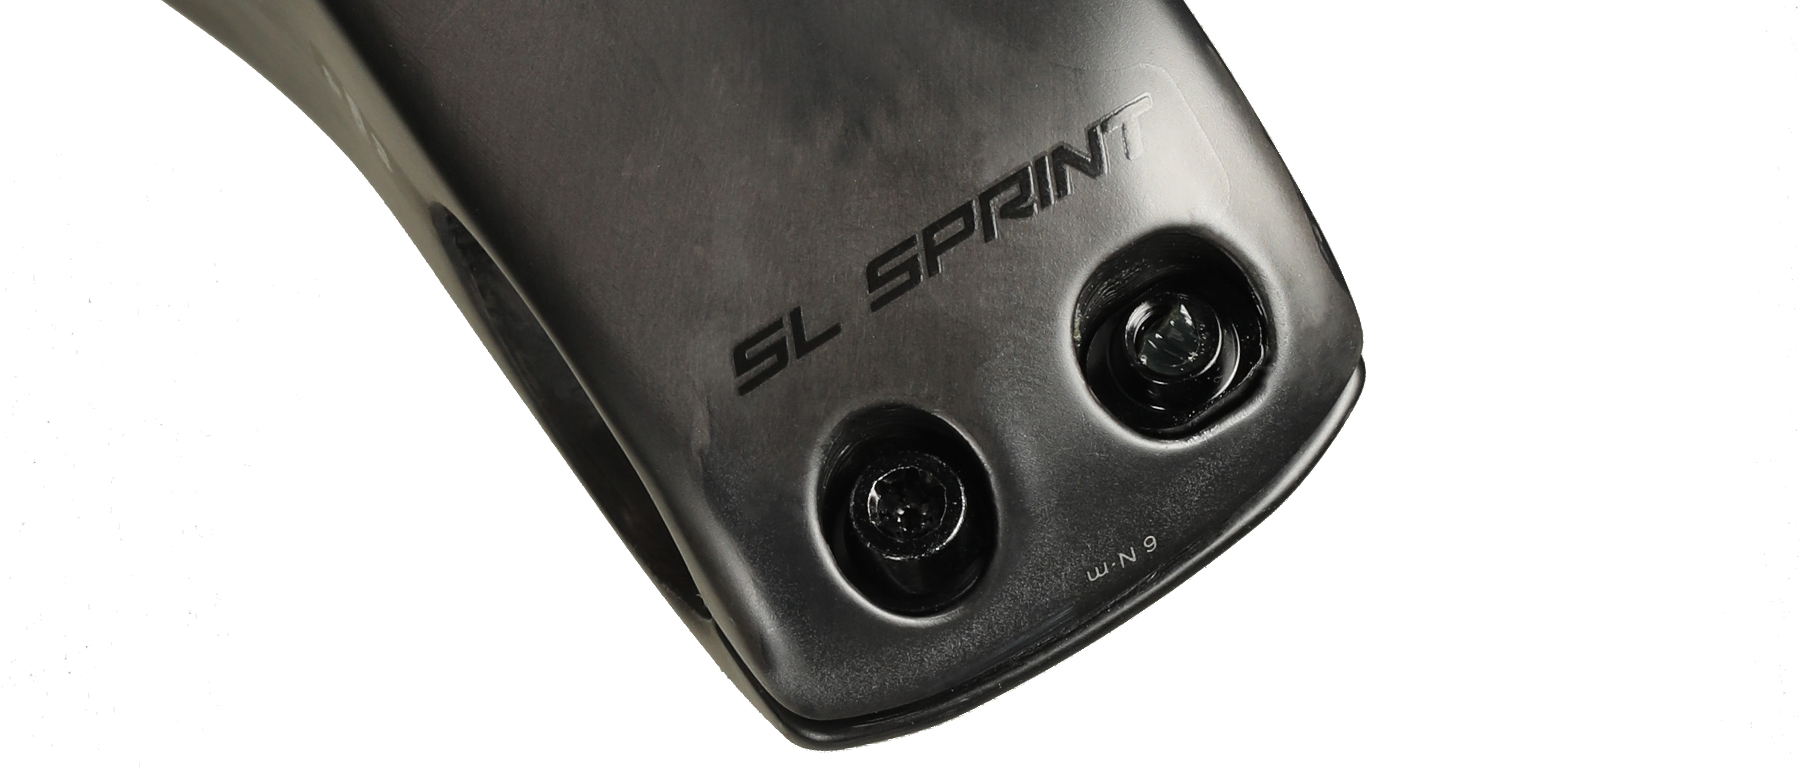 Zipp SL Sprint Stem